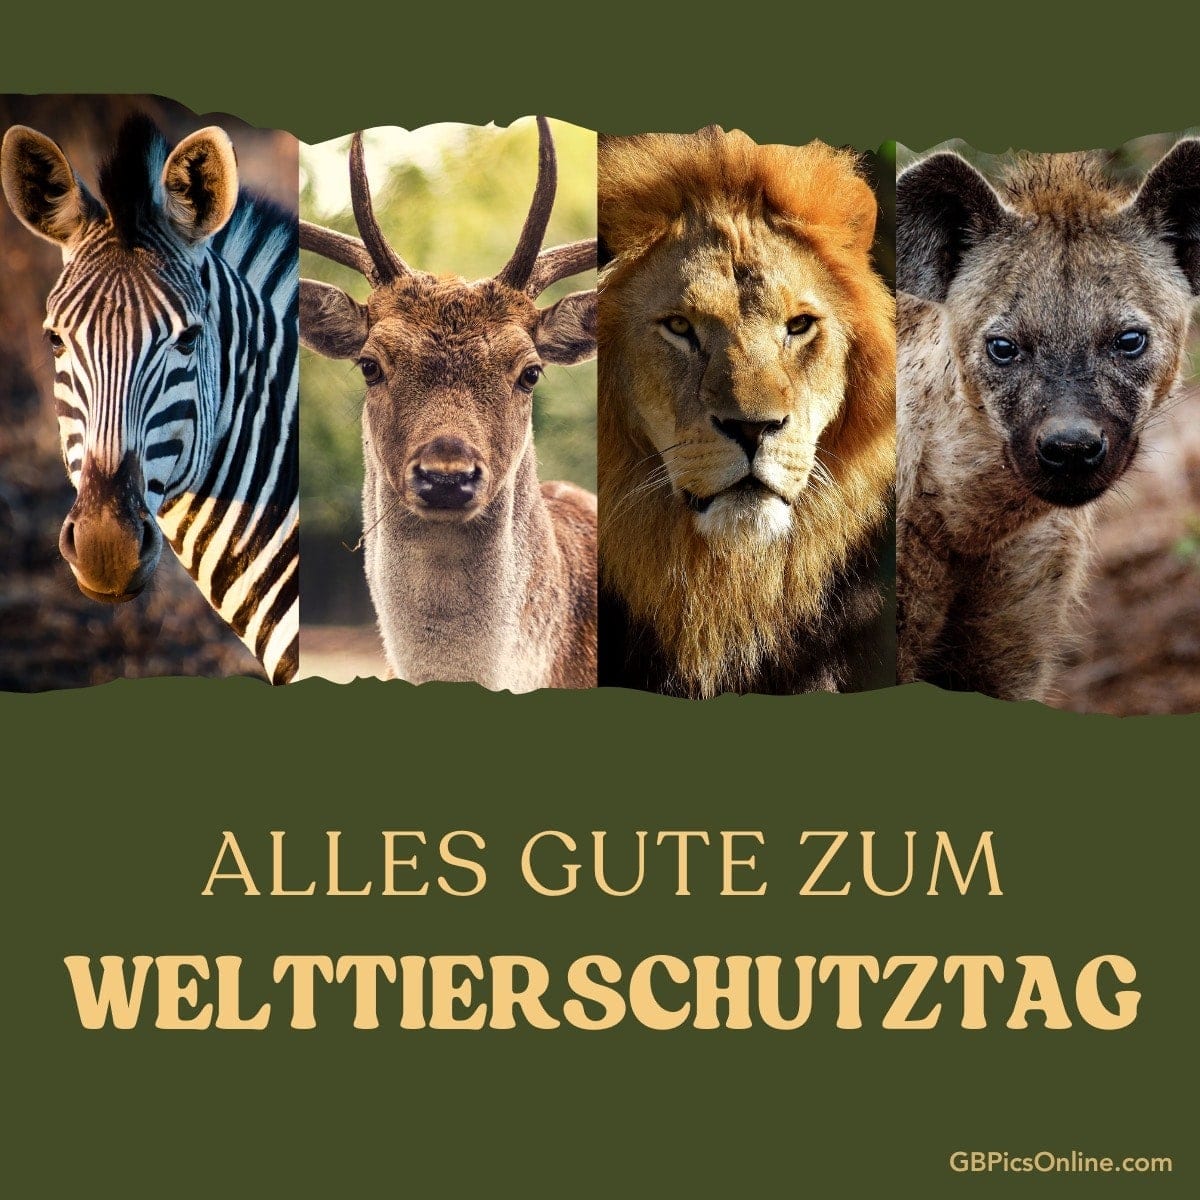 Vier wilde Tiere, darunter ein Zebra, Rotwild, Löwe und Hyäne, mit Gruß zum Welttierschutztag